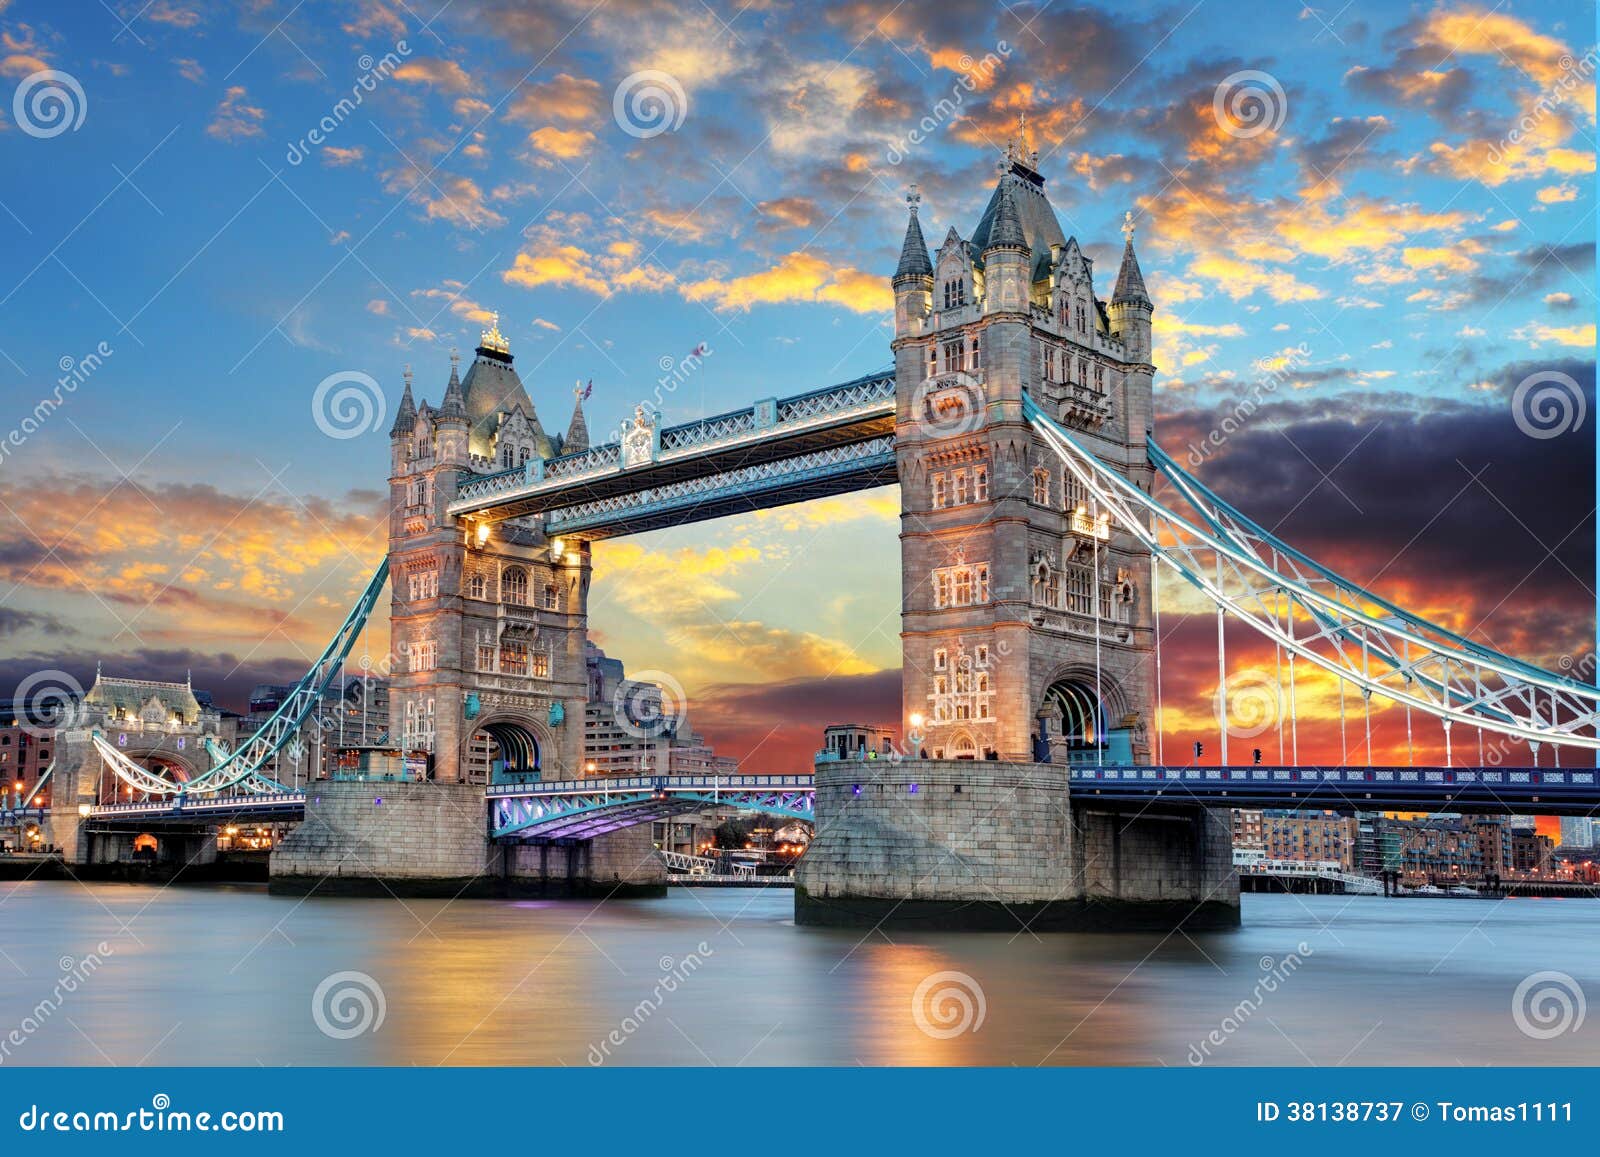 Turm-Brücke in London, Großbritannien